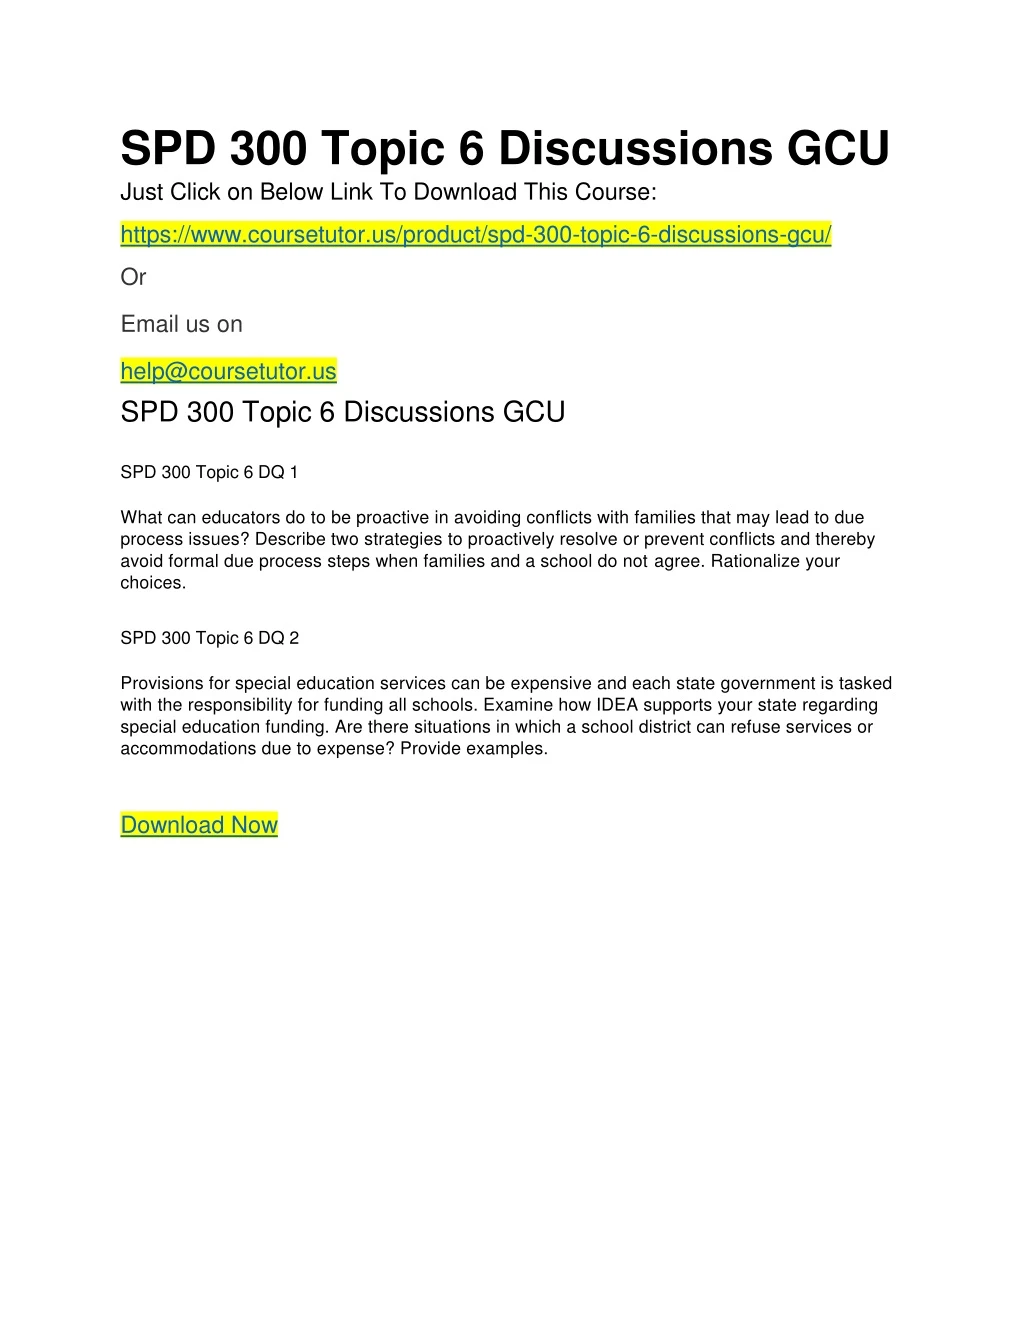 spd 300 topic 6 discussions gcu just click